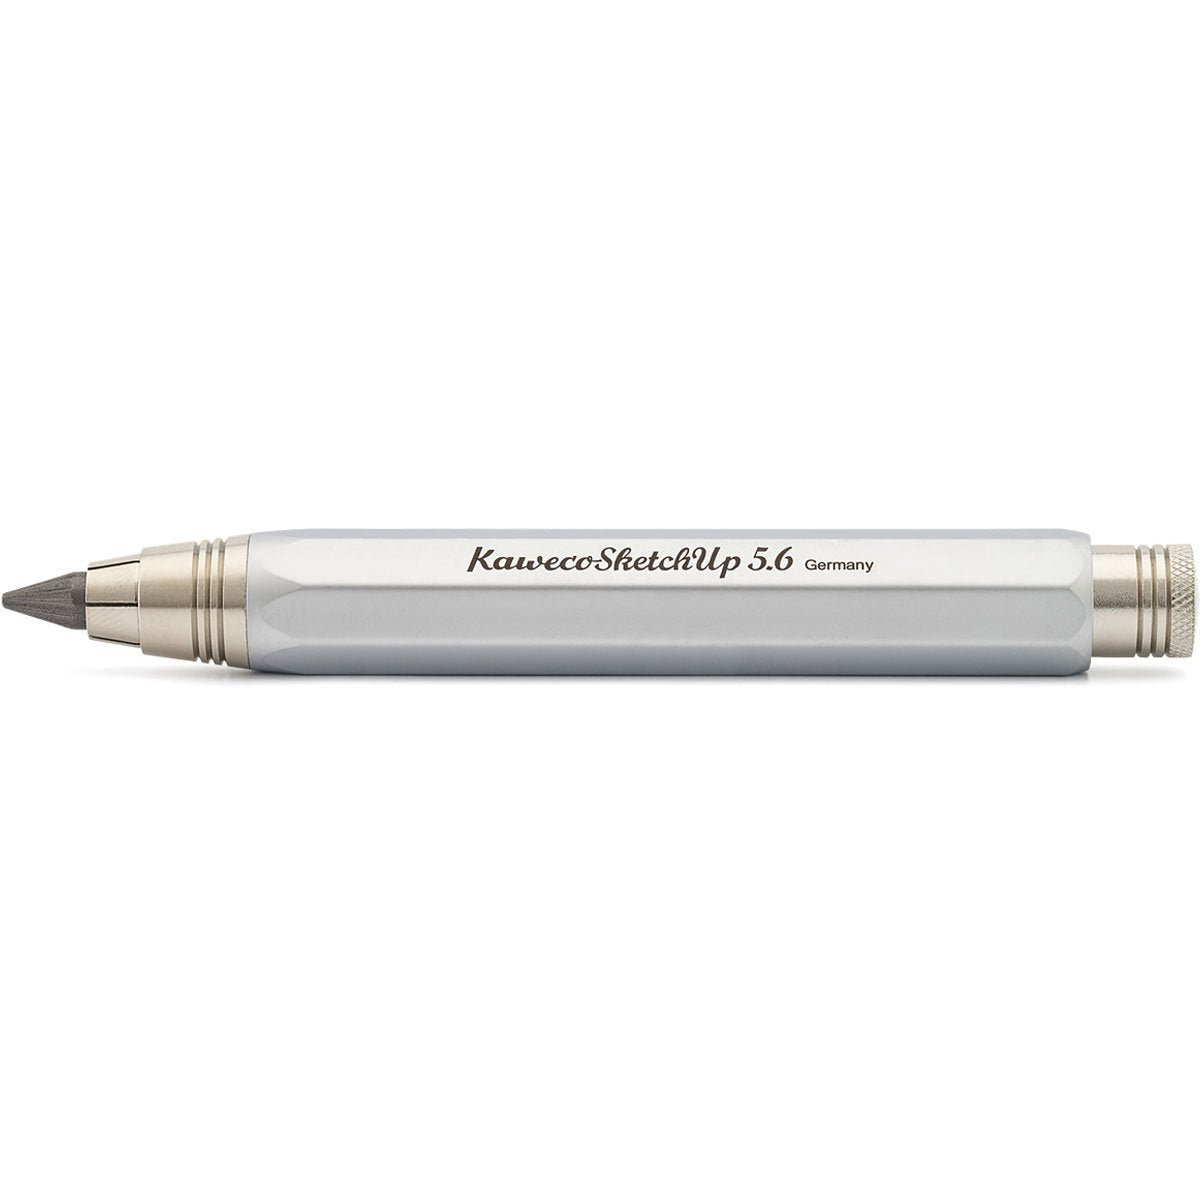 Kaweco Sketch UP Pencil - Satine Chrome-Pen Boutique Ltd